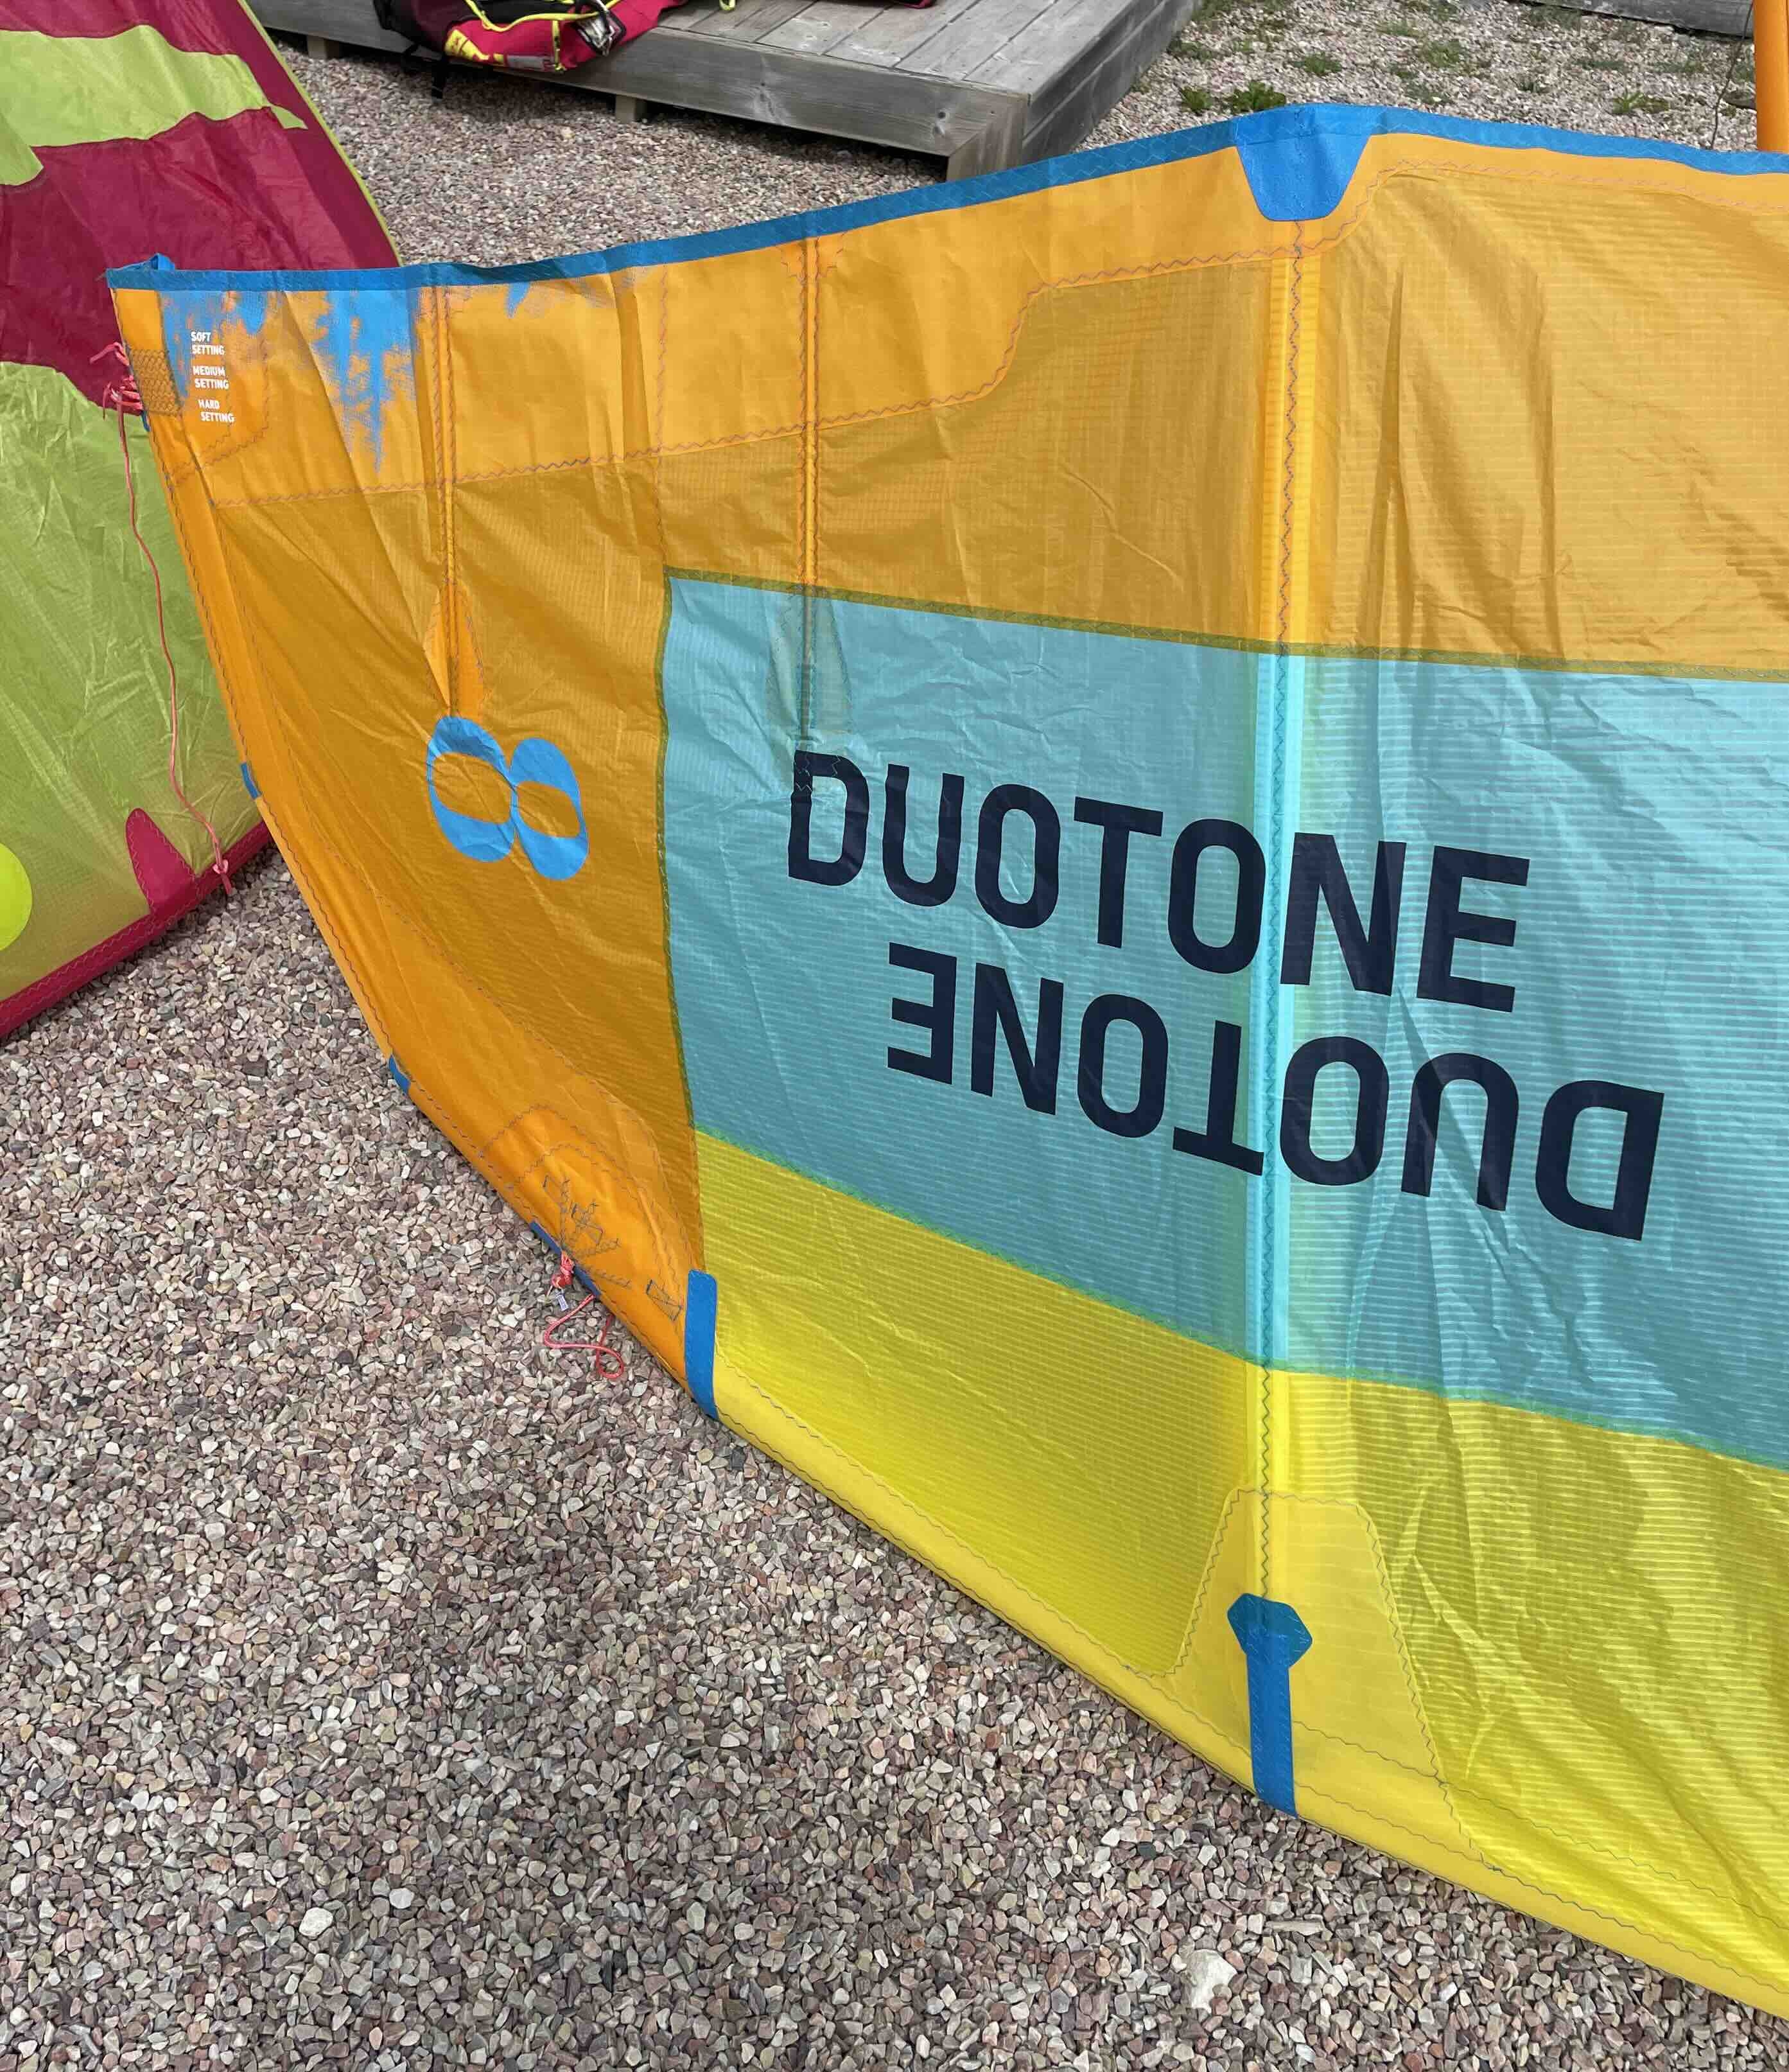 Duotone Dice 8m 2019